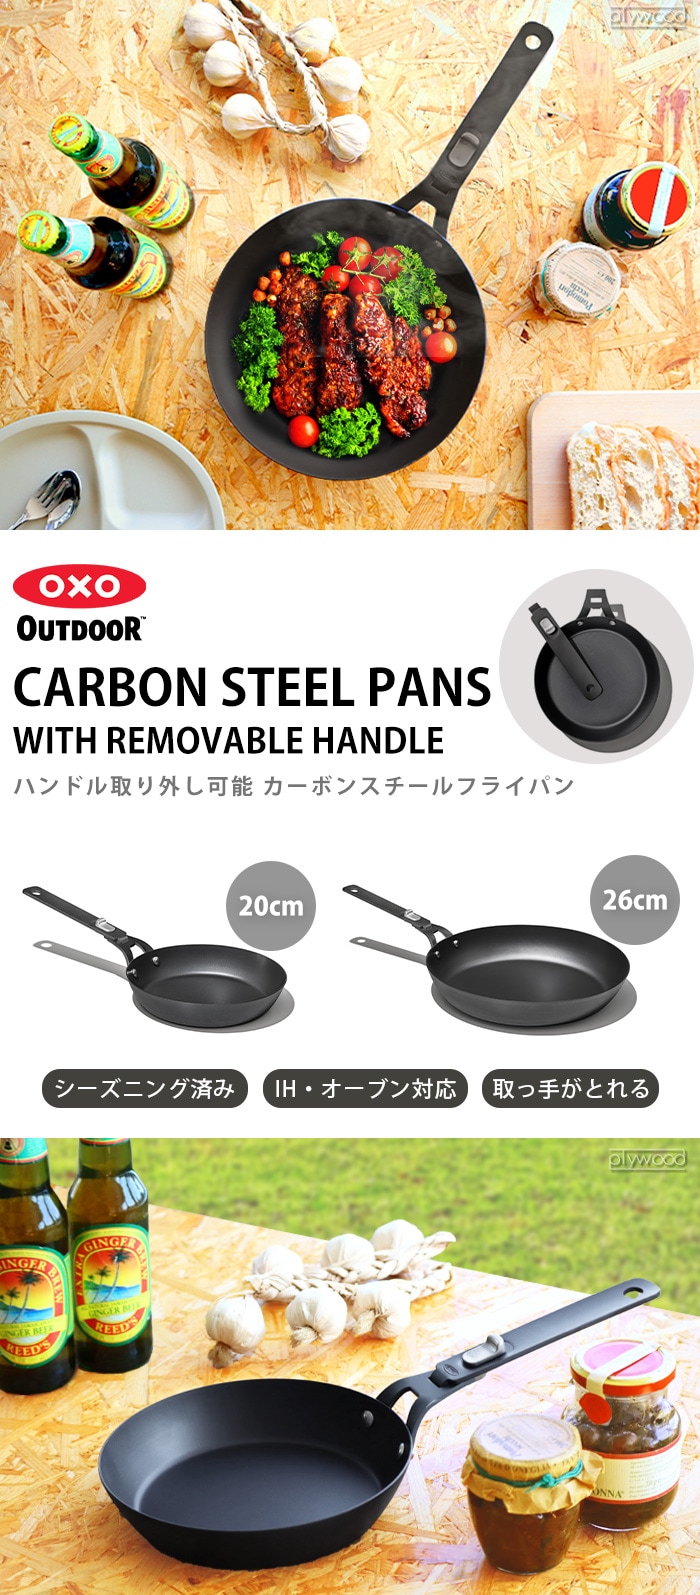 OXO Outdoor 8 Carbon Steel Pan